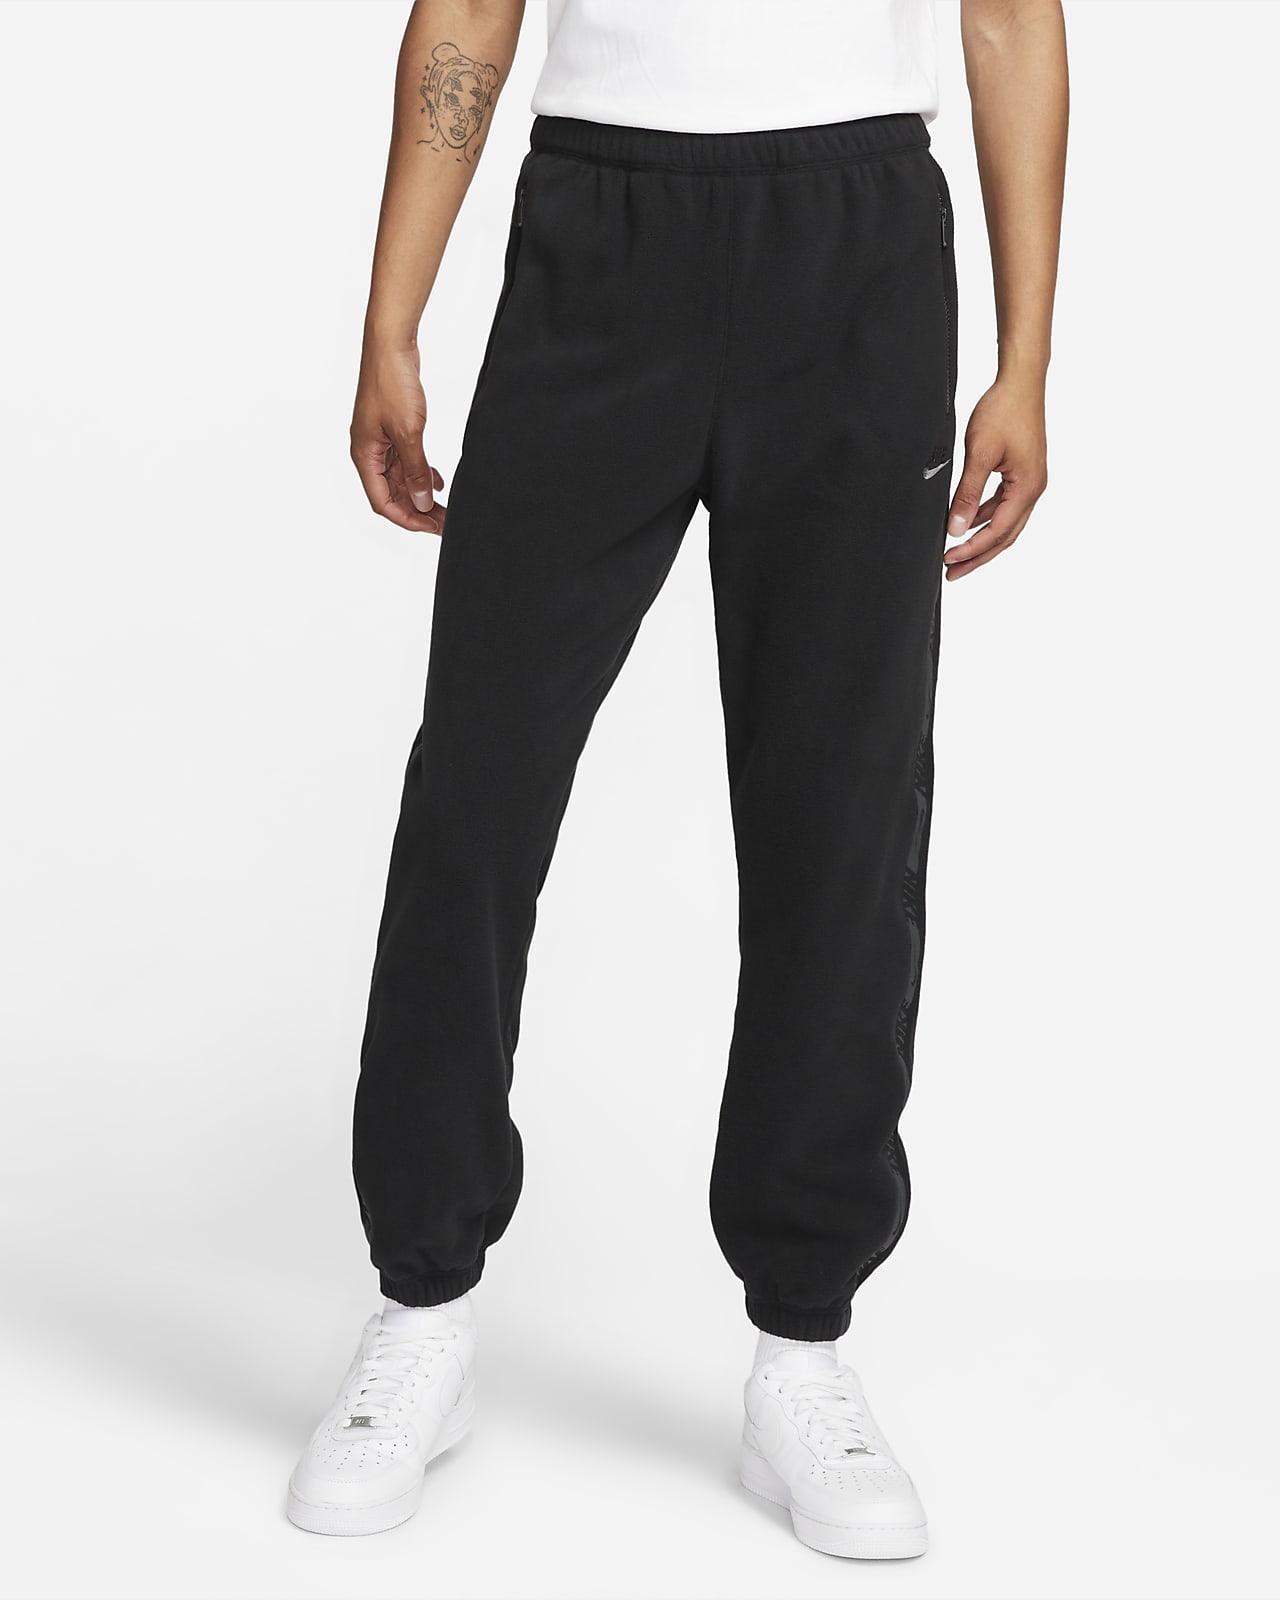 Nike Sportswear Therma-FIT Men's Fleece Trousers